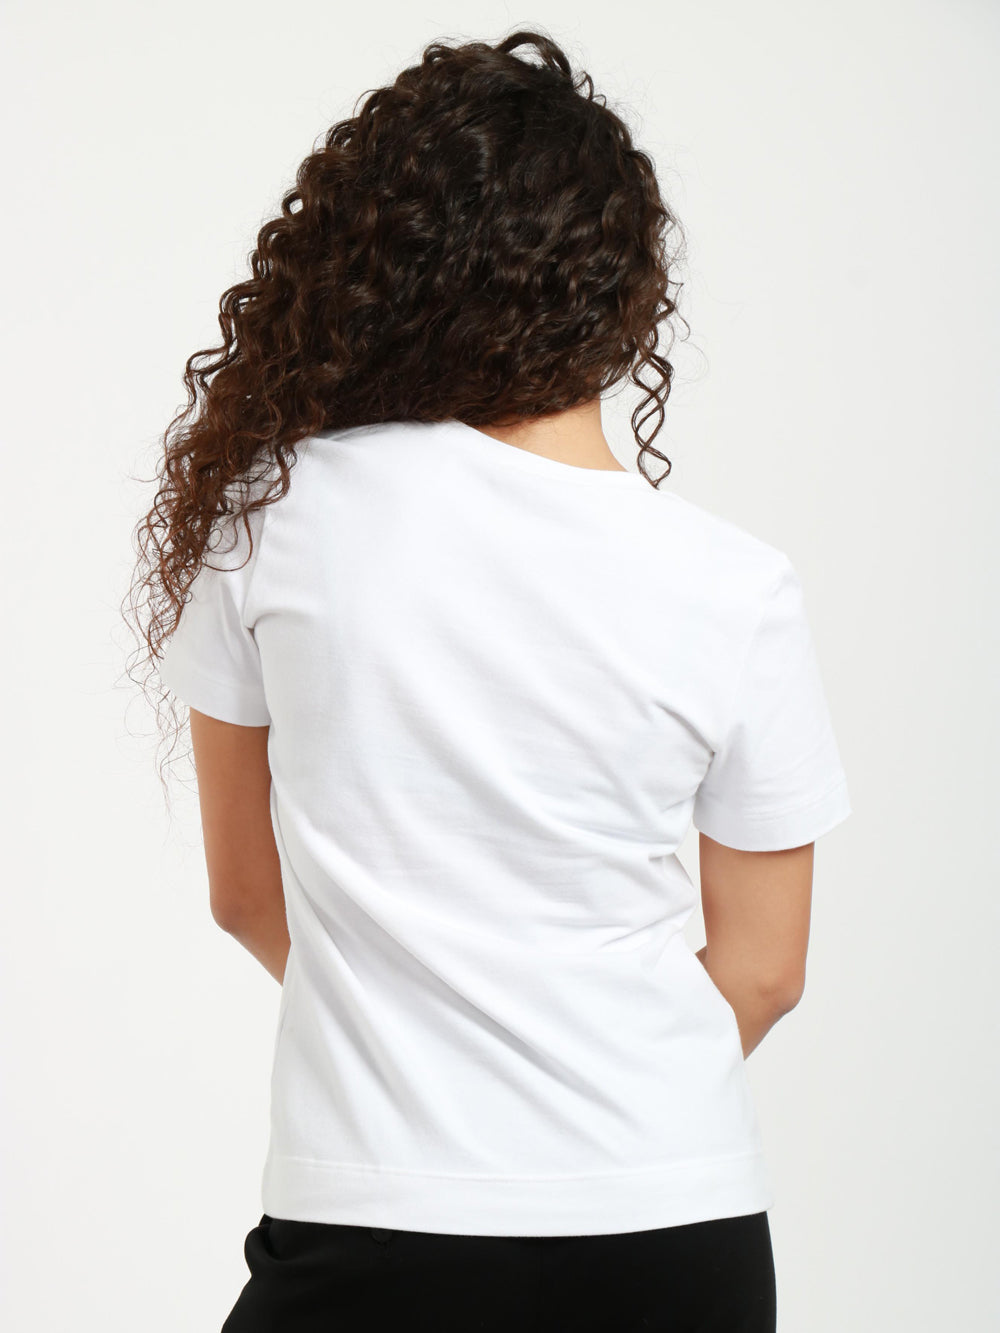 CIRCOLO 1901 T-Shirt in Cotone Bianca con Scollo a V Bianco ottico